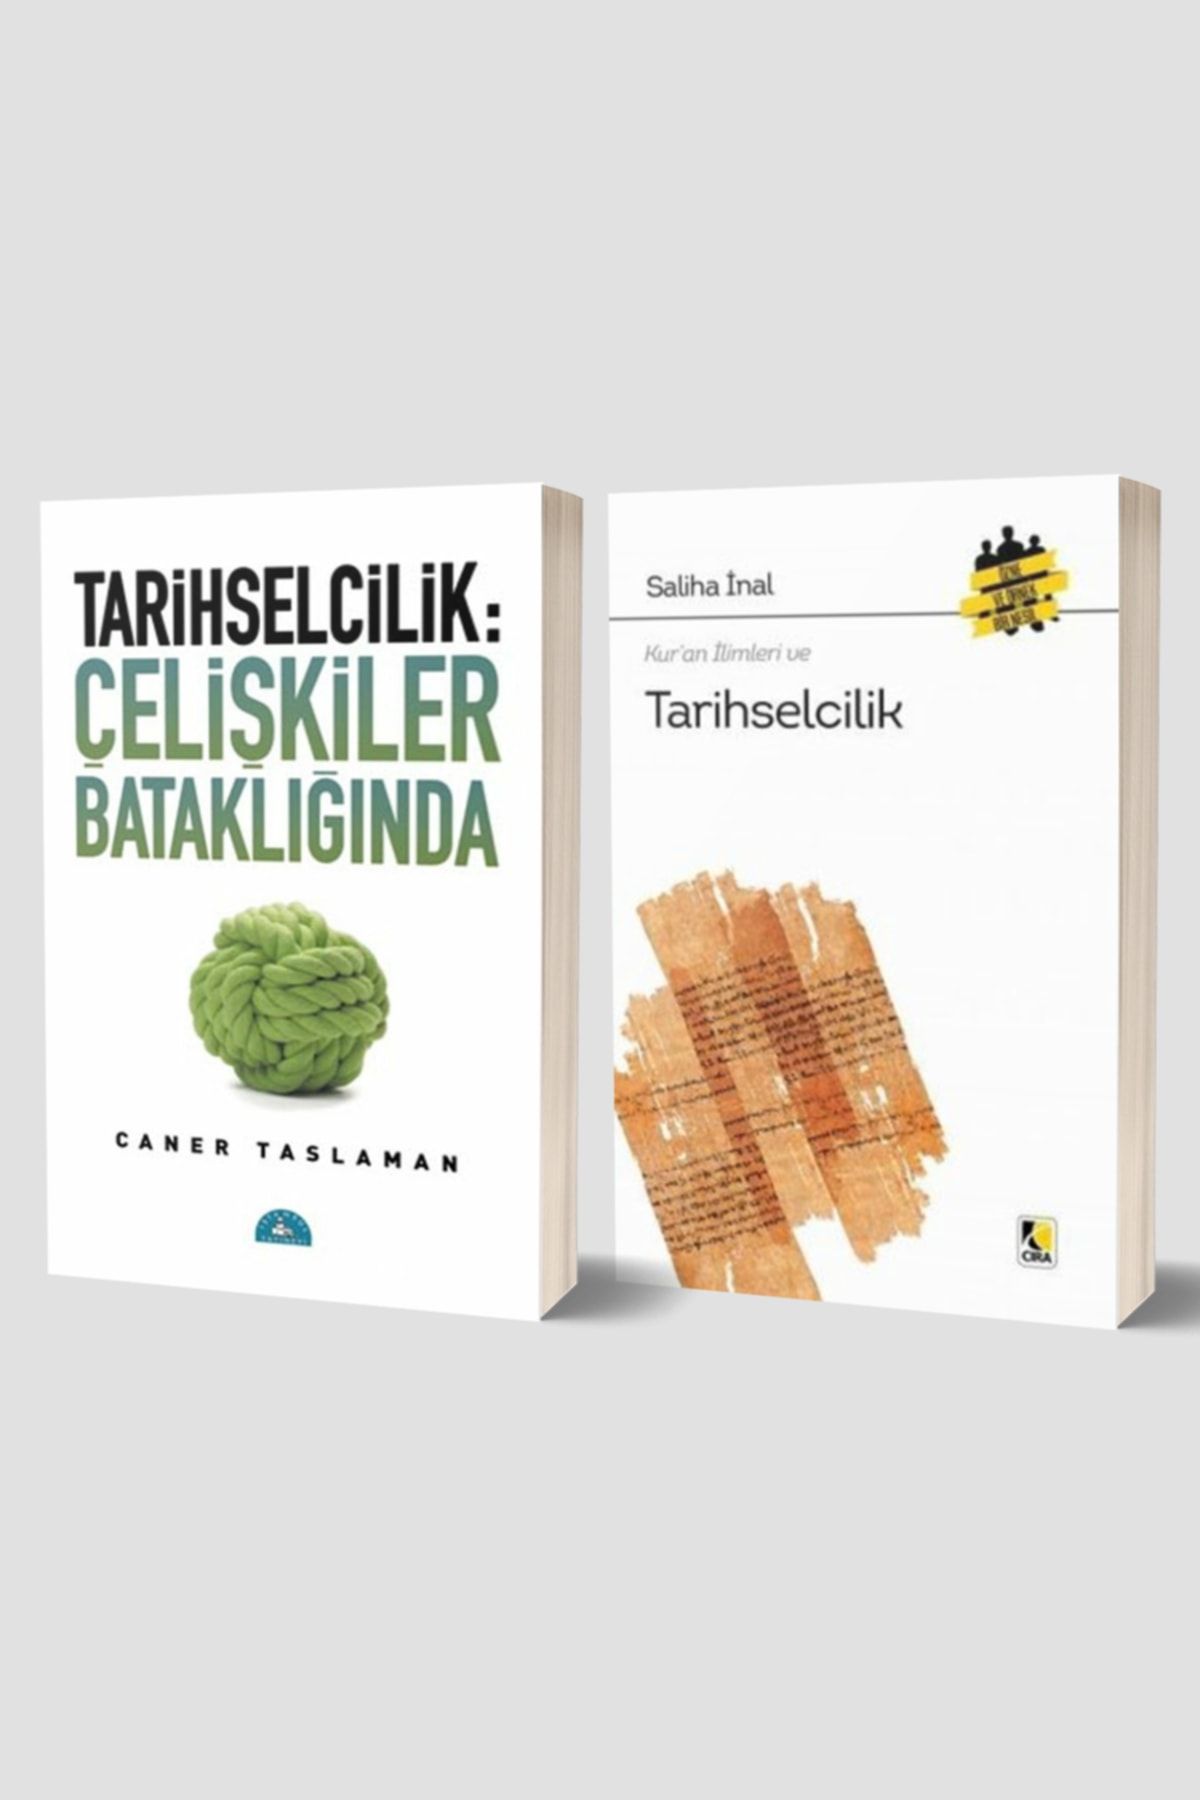 İstanbul Yayınevi Tarihselcilik: Çelişkiler Bataklığında - Kur’an Ilimleri Ve Tarihselcilik 2 Kitap Set